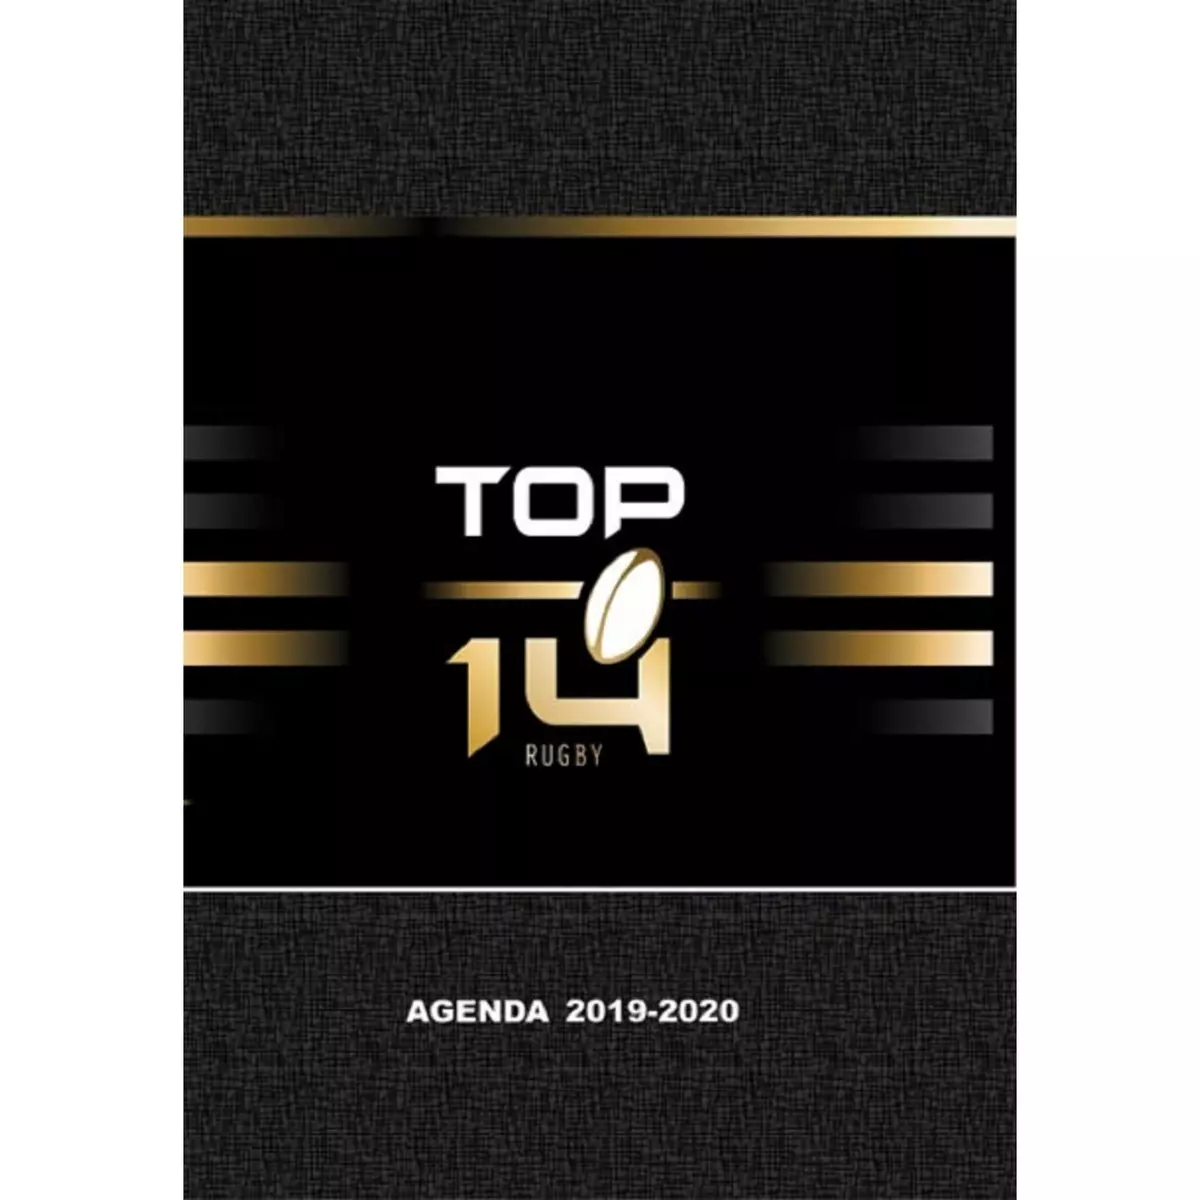  Agenda scolaire journalier garçon 352 pages 12x17cm - couverture carton pelliculé - noir Top 14 Rugby 2019-2020